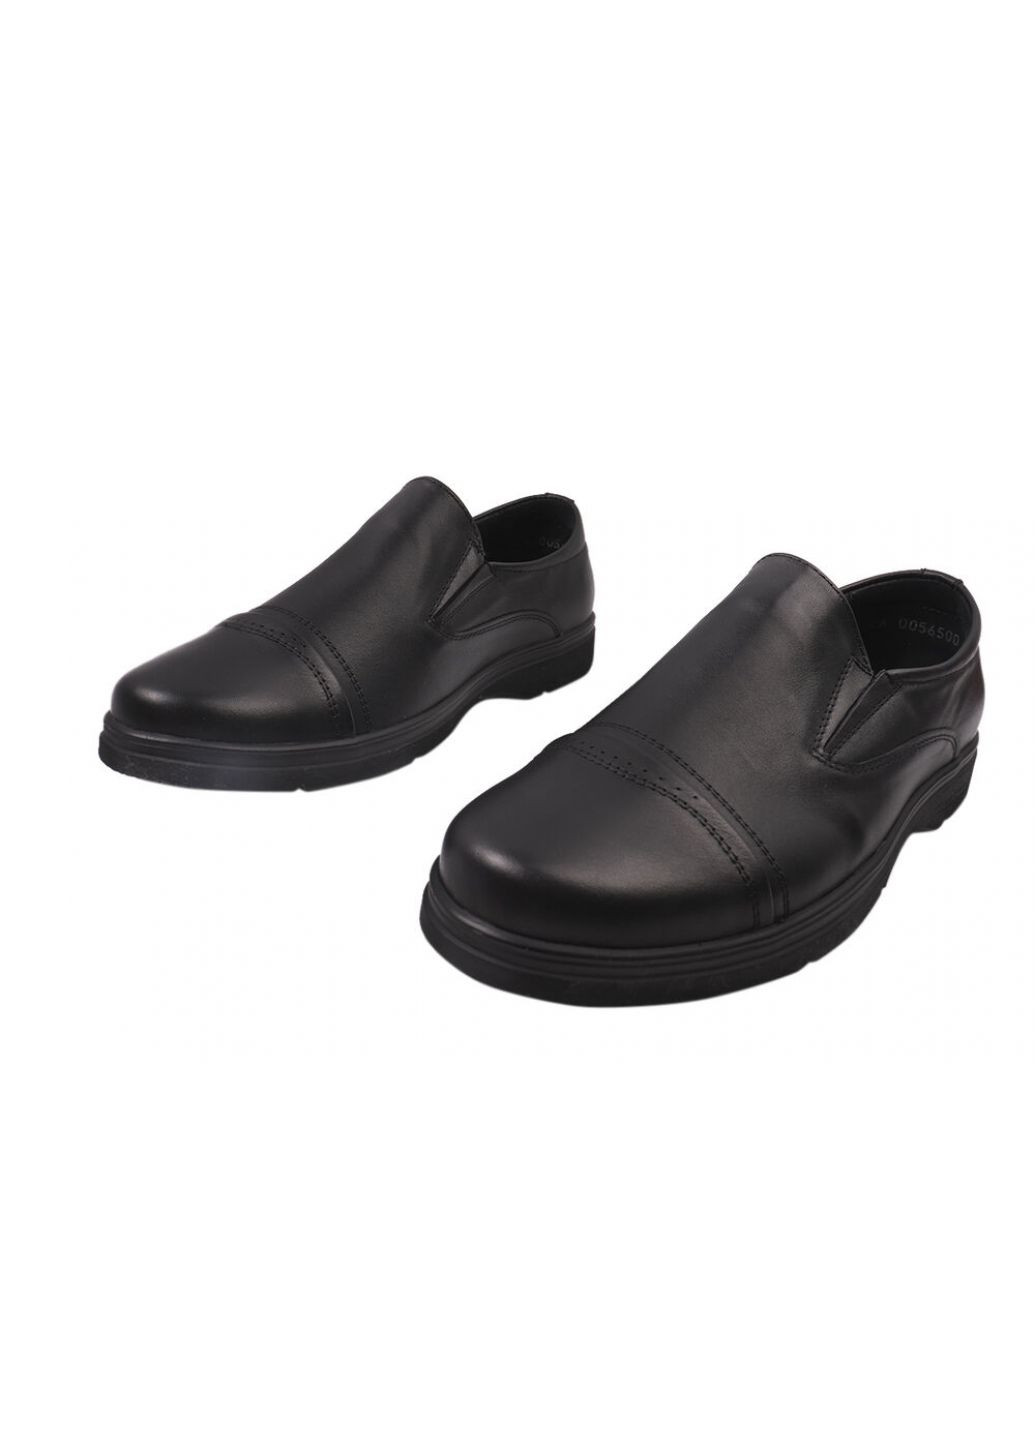 Черные туфли мужские из натуральной кожи, на низком ходу, цвет черный, украина Vadrus